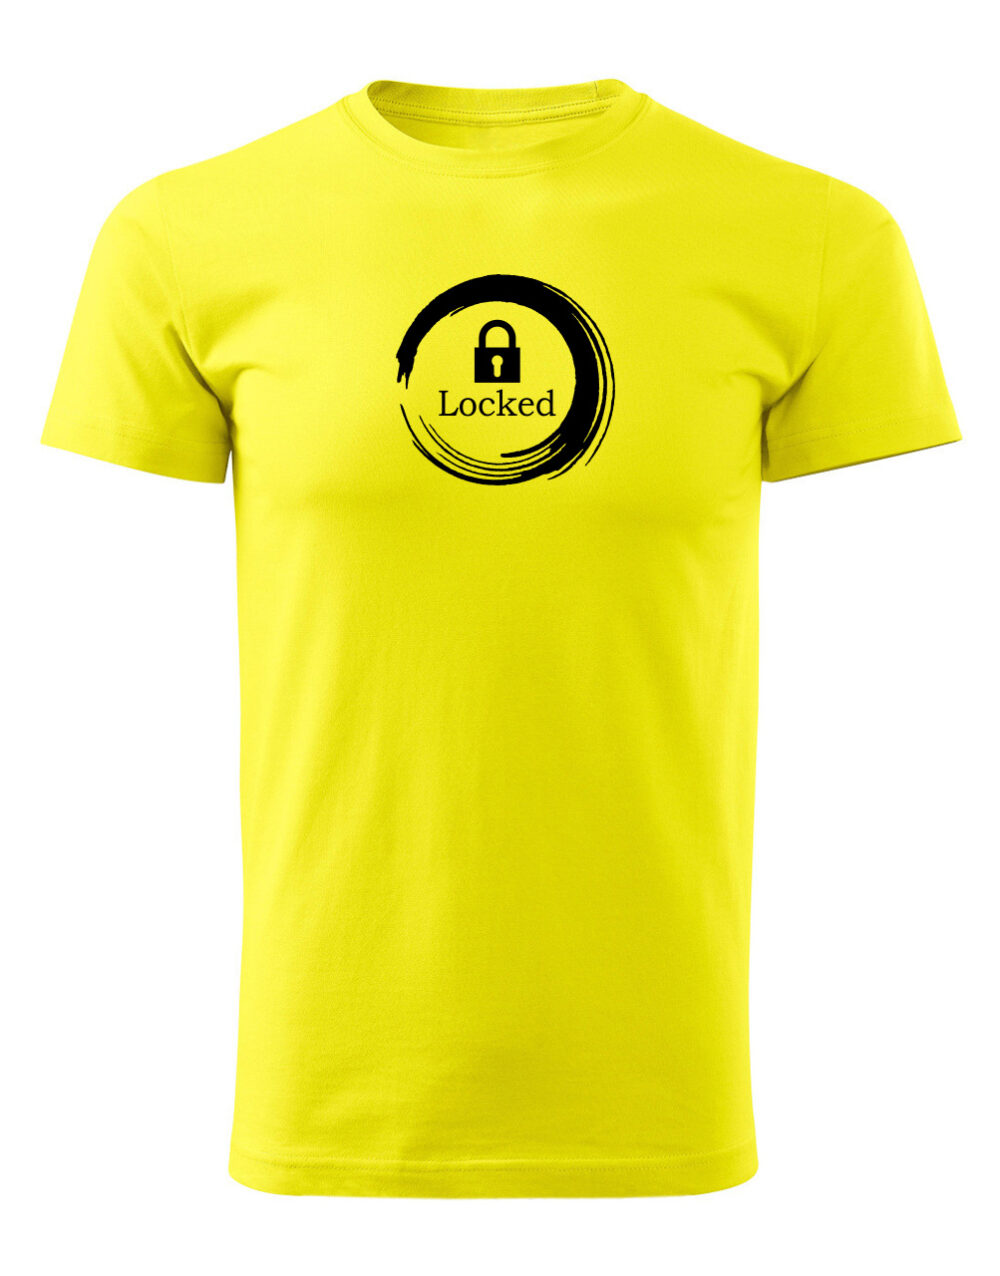 Pánské tričko s potiskem Locked žlutá